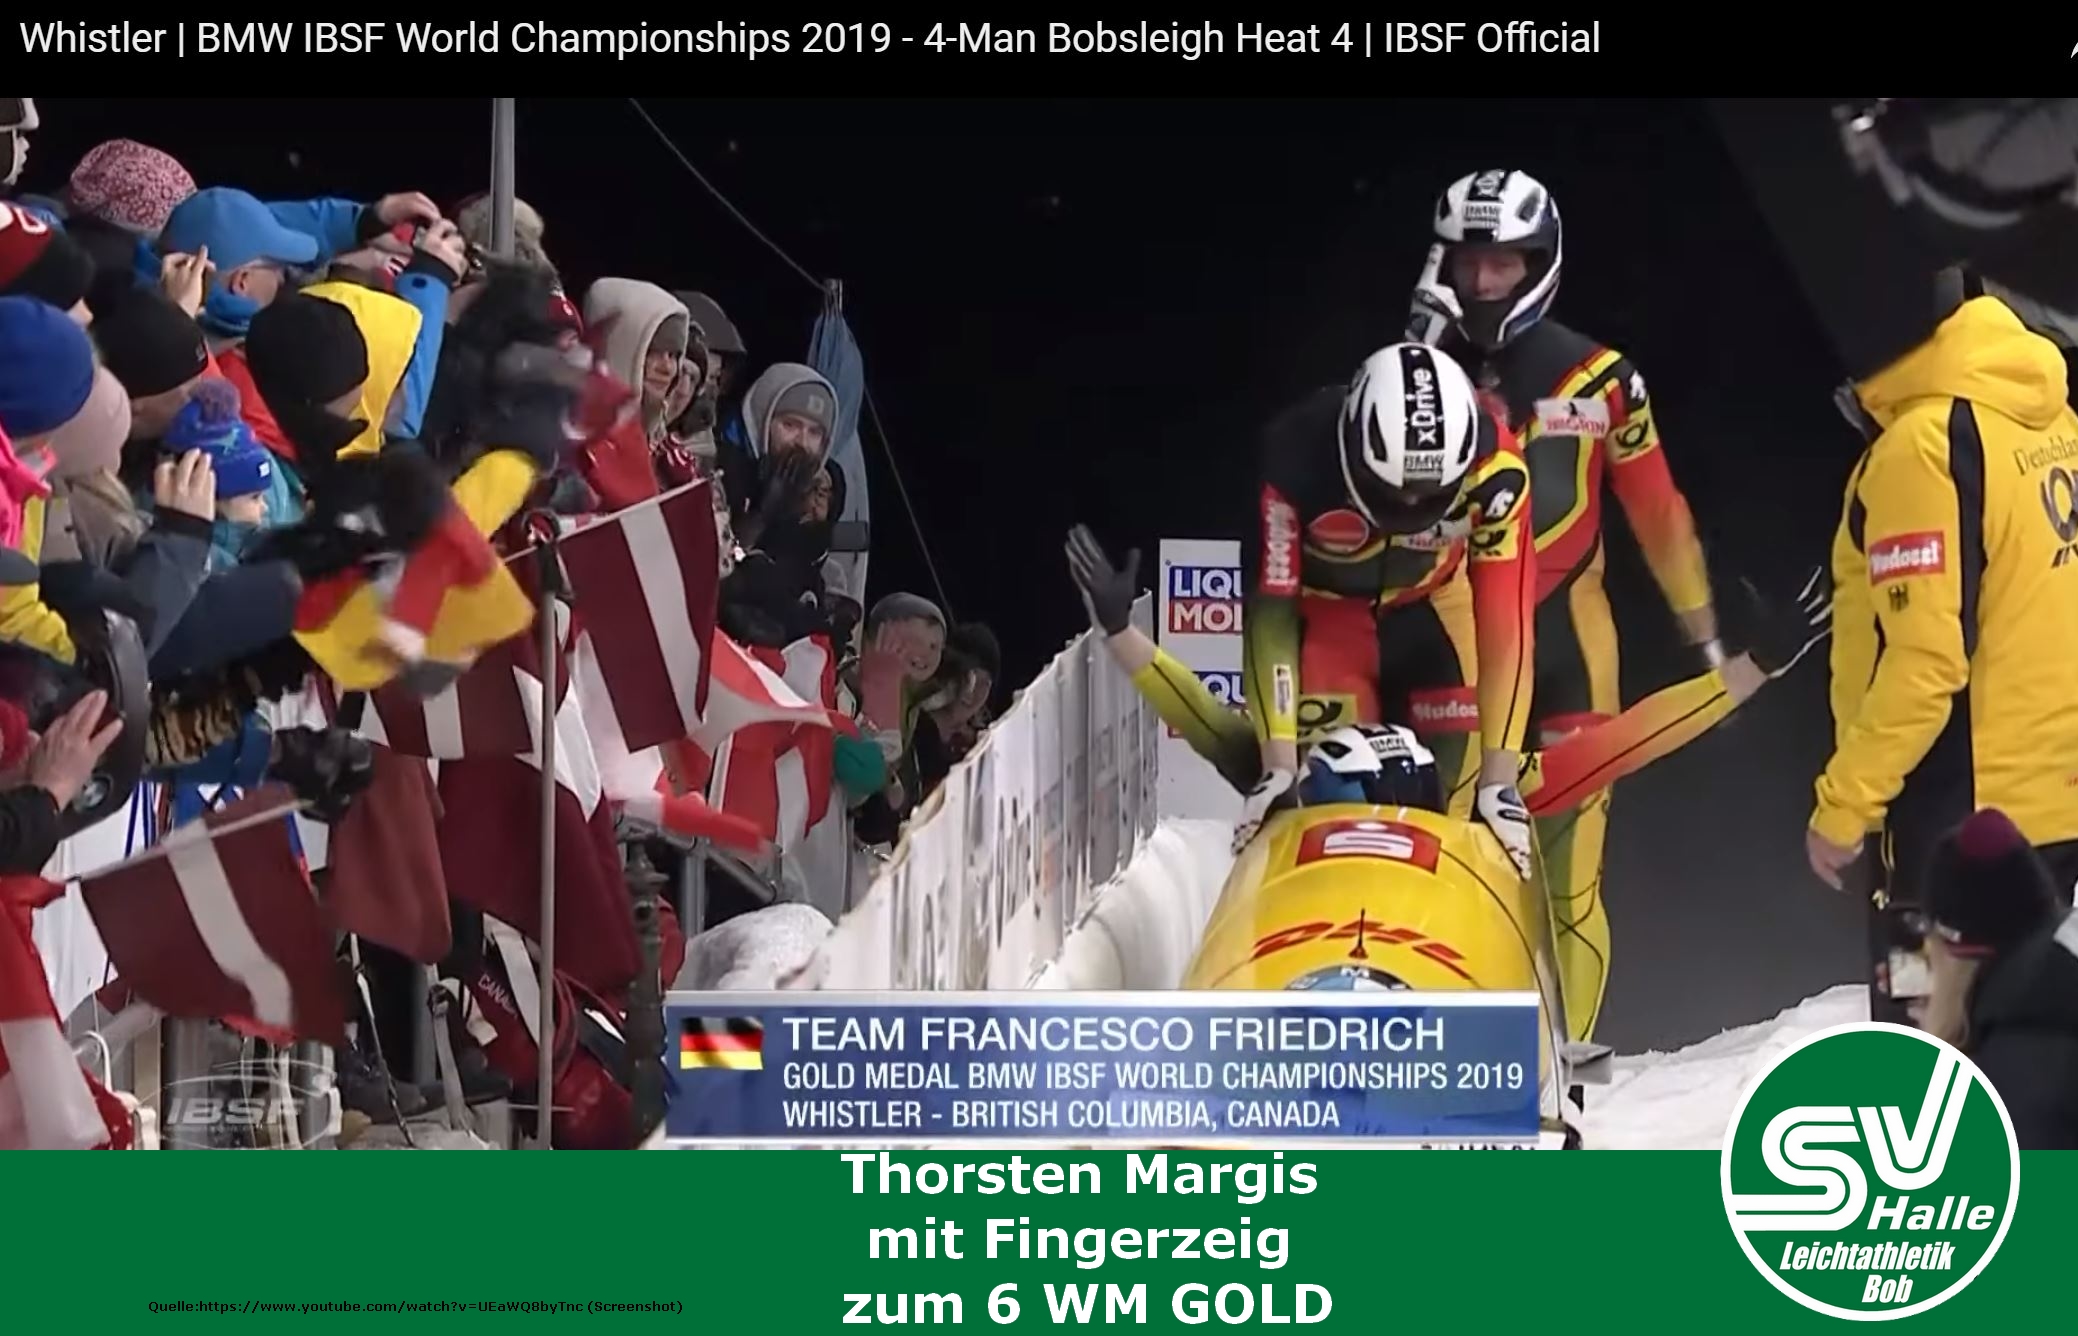 2019.03.10 - Thorsten Margis mit Fingerzeig zum 6 WM gold - screenshot youtube https://www.youtube.com/watch?v=UEaWQ8byTnc